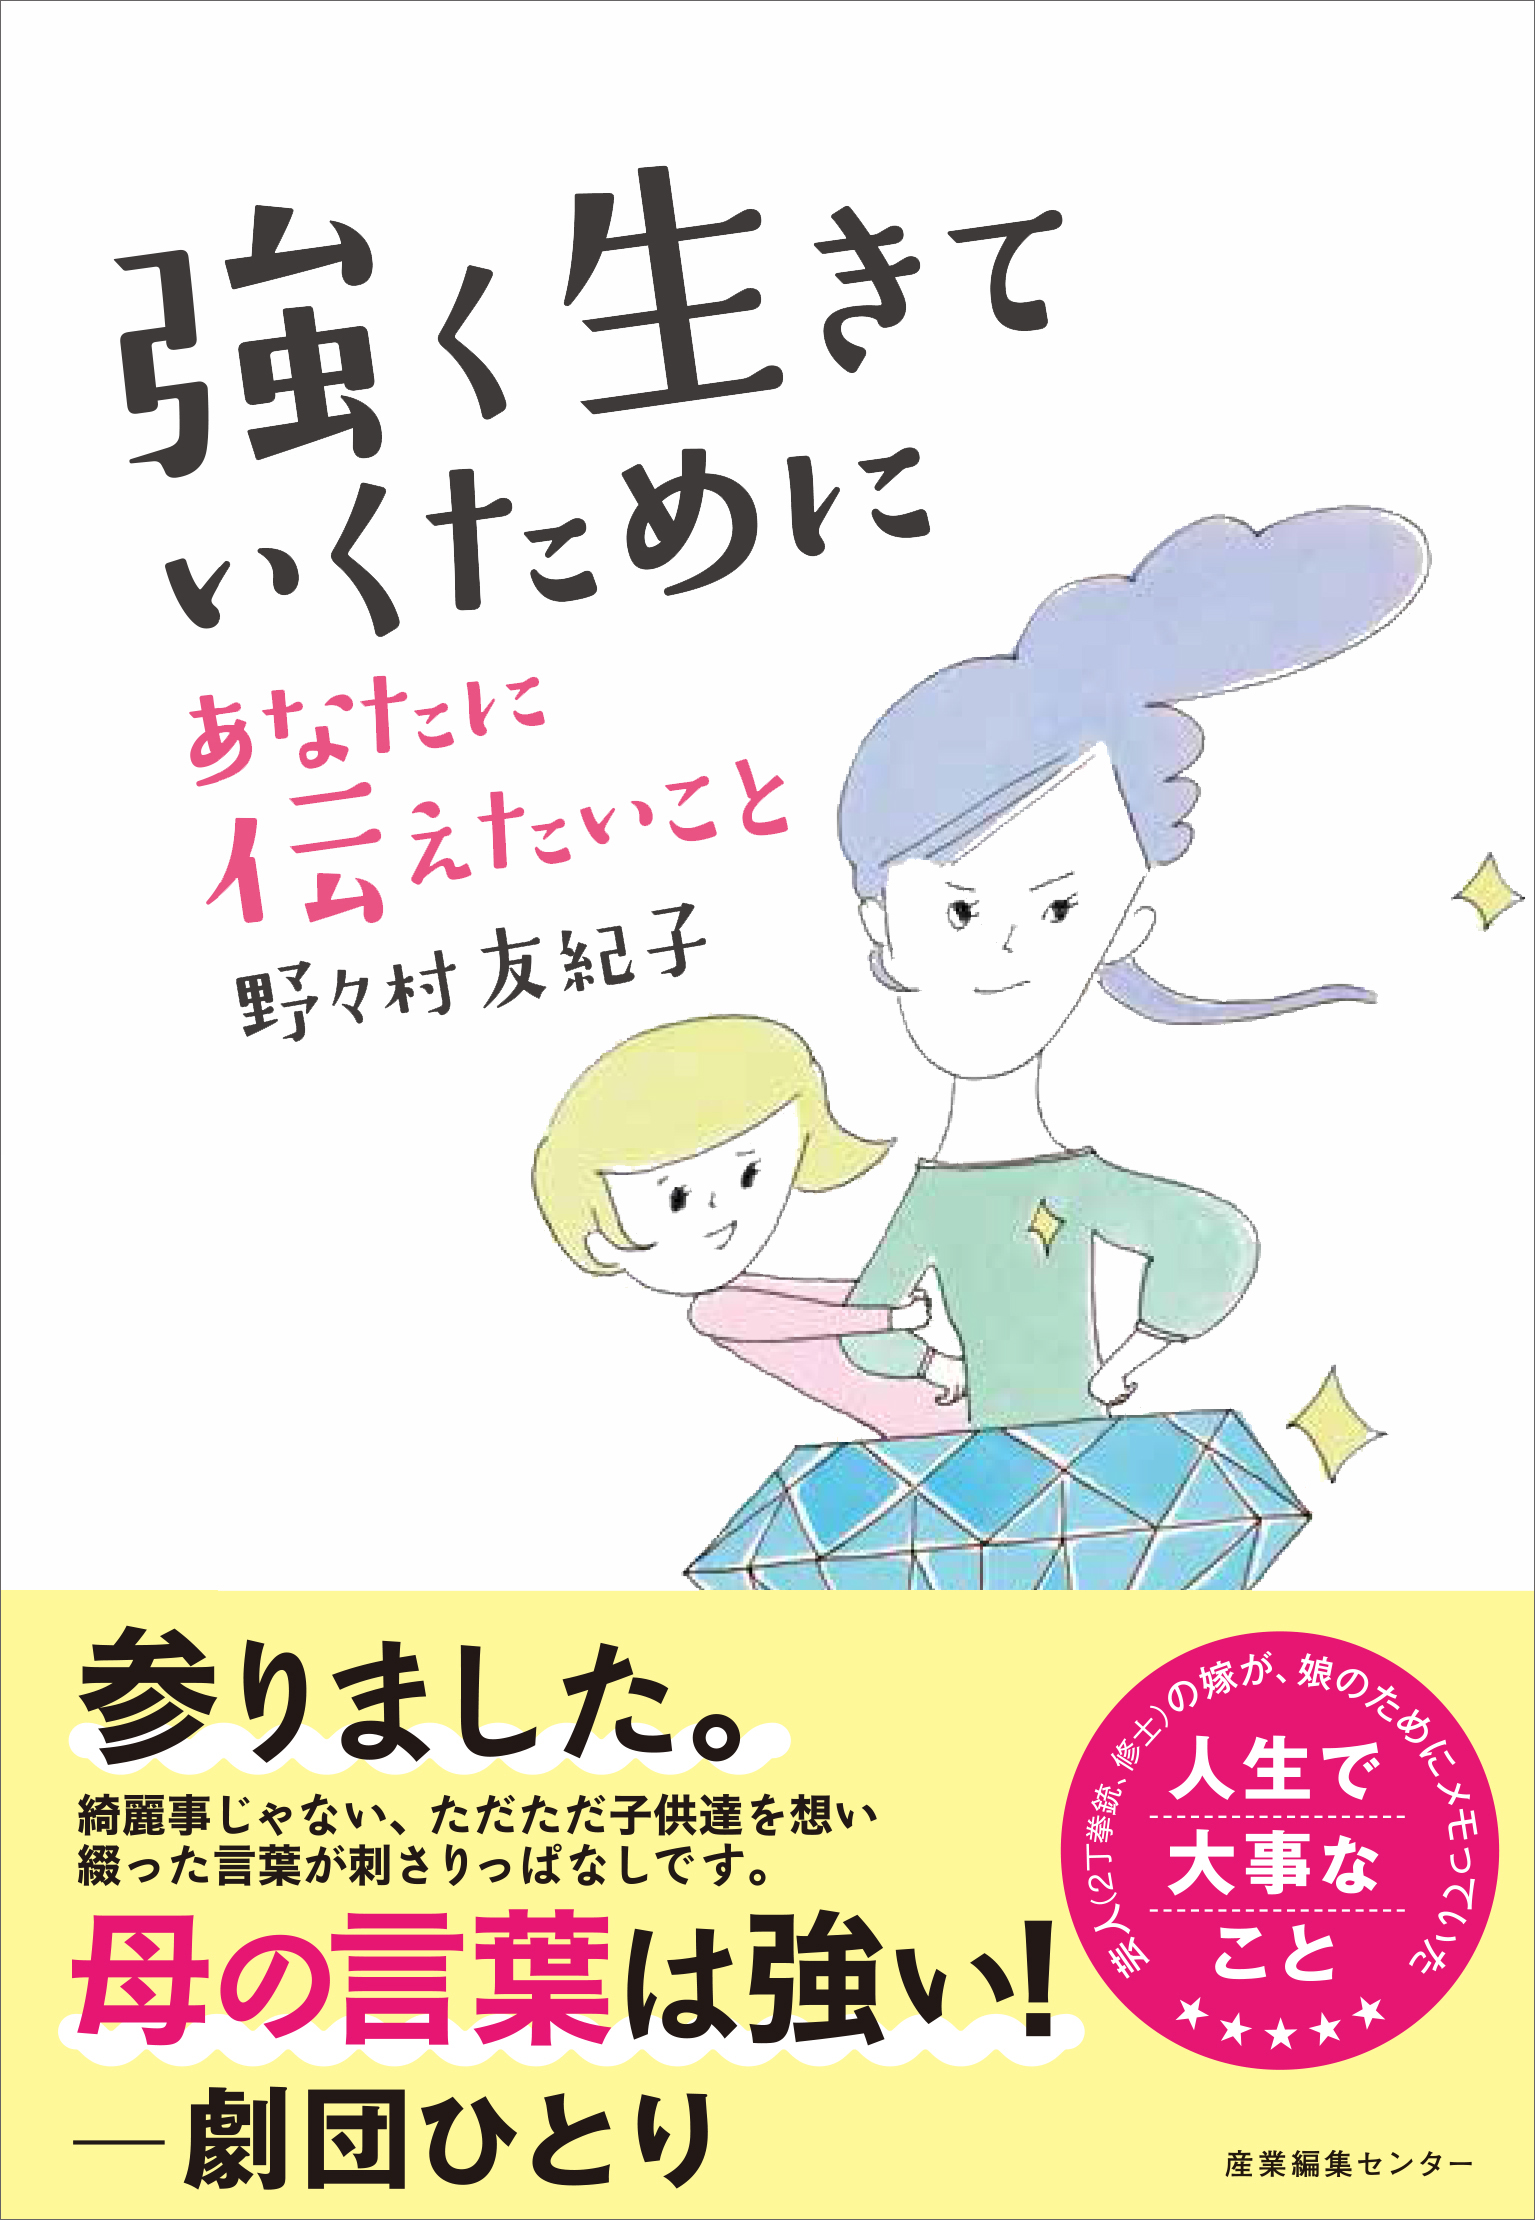 深イイ話 で話題 芸人の嫁 野々村友紀子 初の著書がついに発売